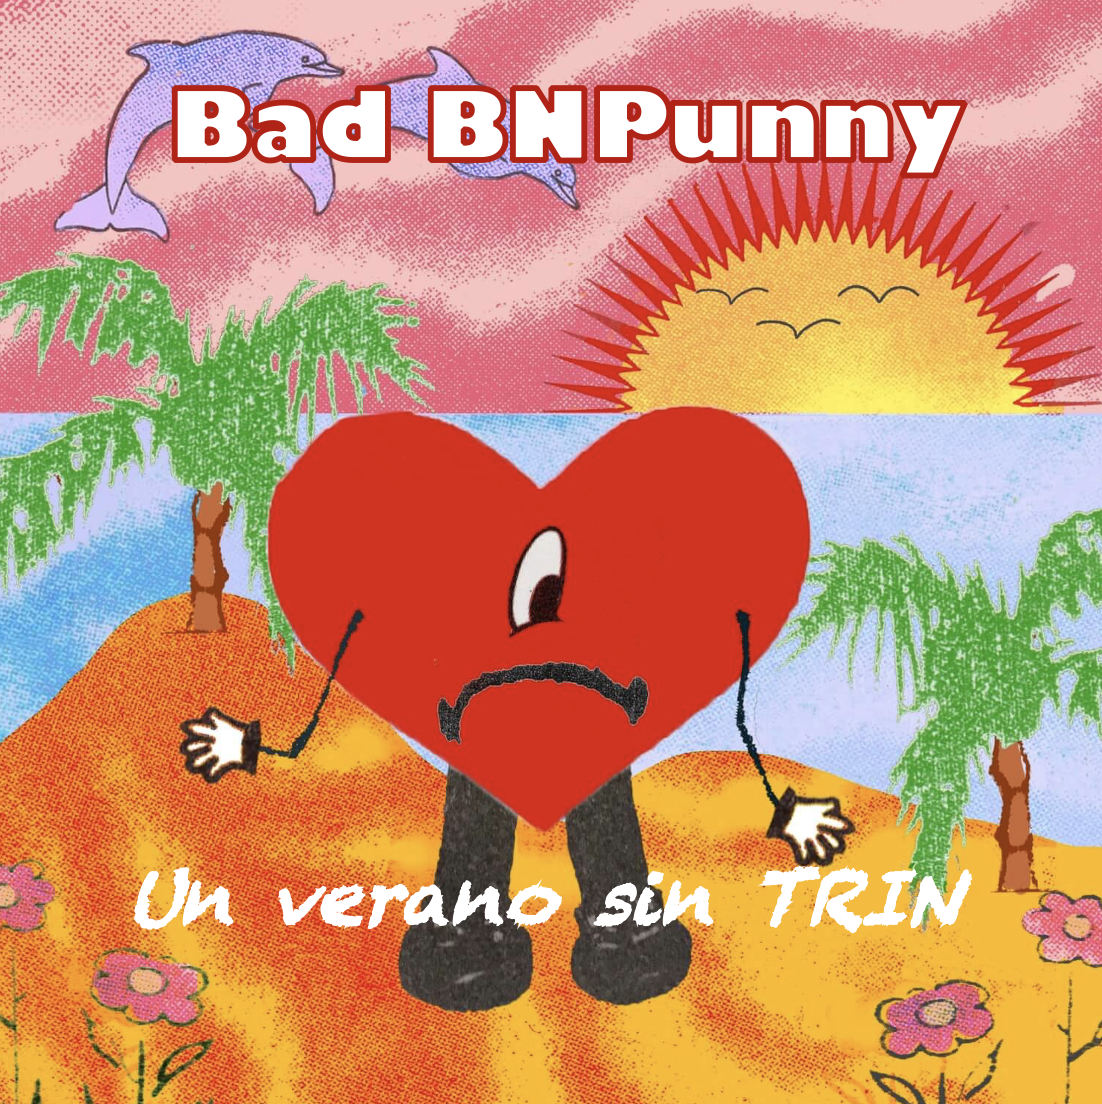 Bad BNPunny